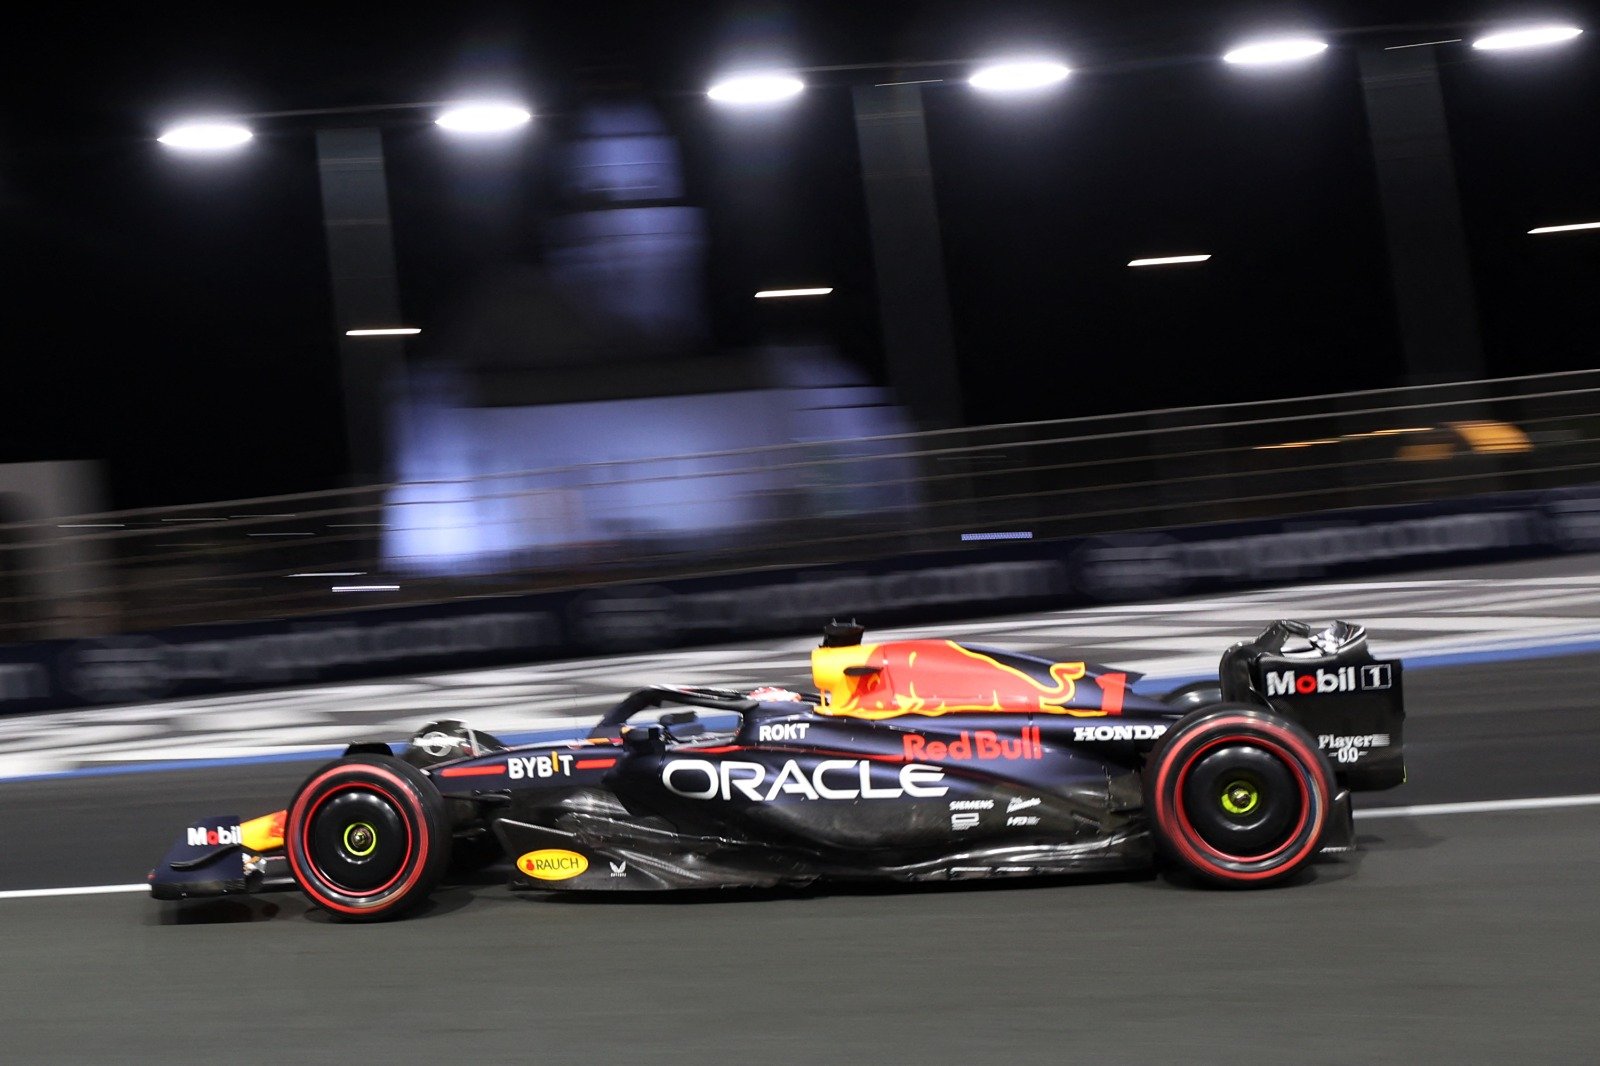 F1 AO VIVO: Acompanhe o terceiro treino livre para o GP da Arábia